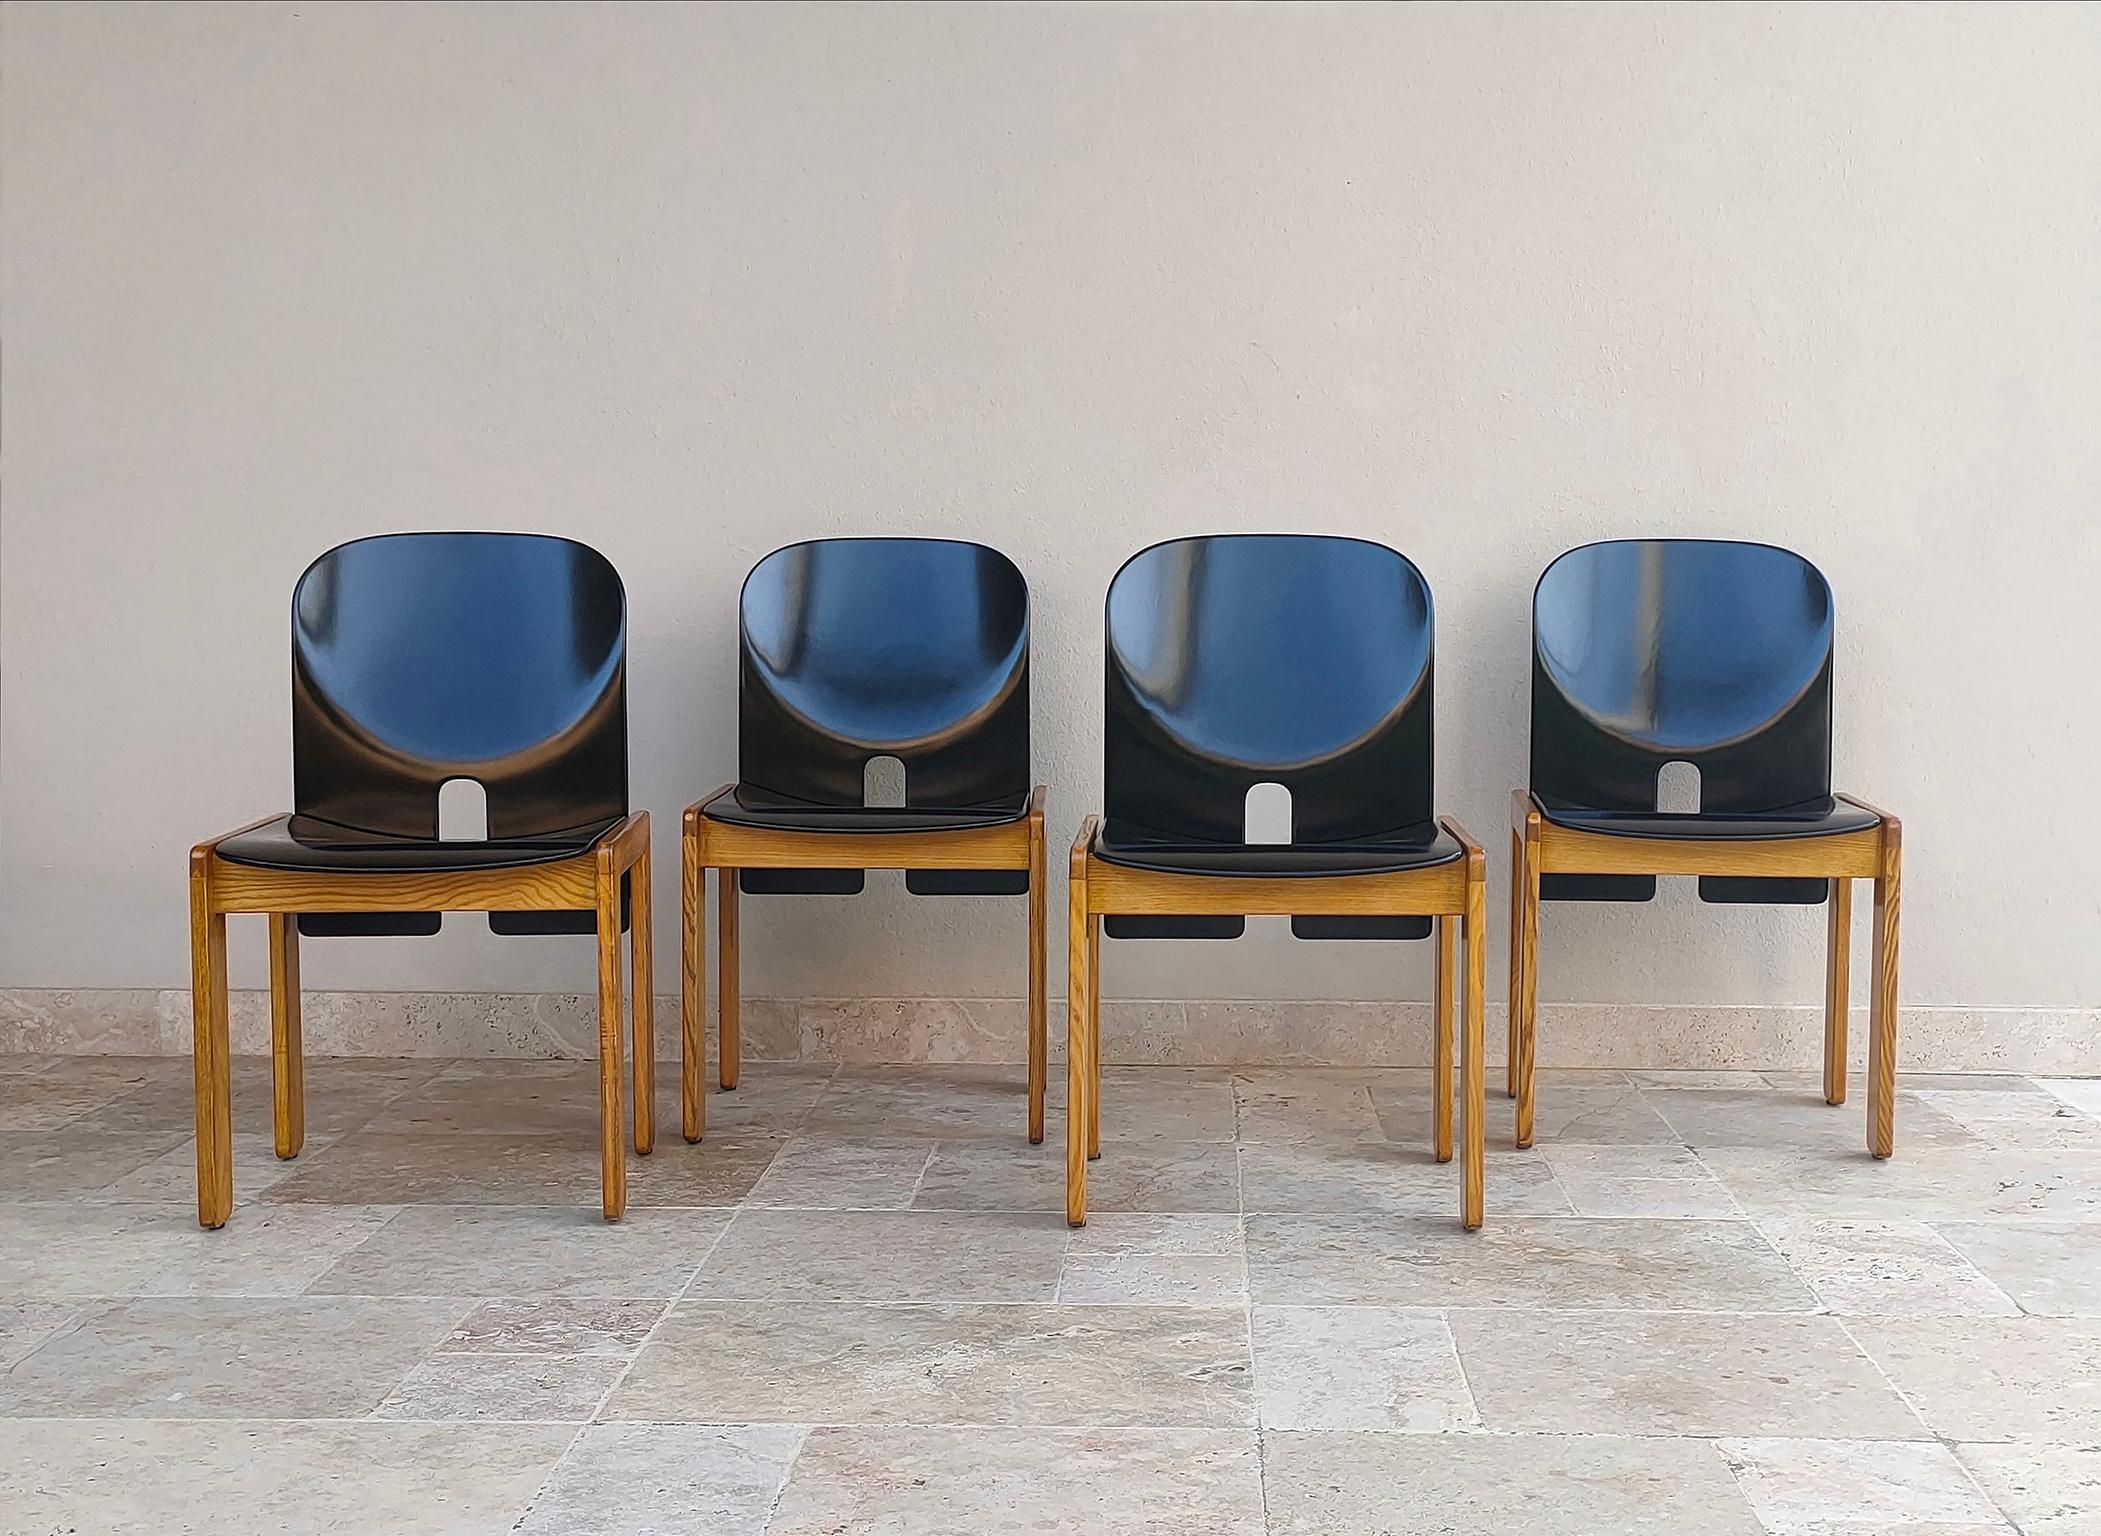 De 1963 à 1966, les architectes Afra et Tobia Scarpa ont collaboré avec la société italienne Cassina, concevant une série de meubles caractérisés par l'utilisation du bois massif, l'étude du joint et l'assemblage des pièces avec des vis. 
Parmi ces